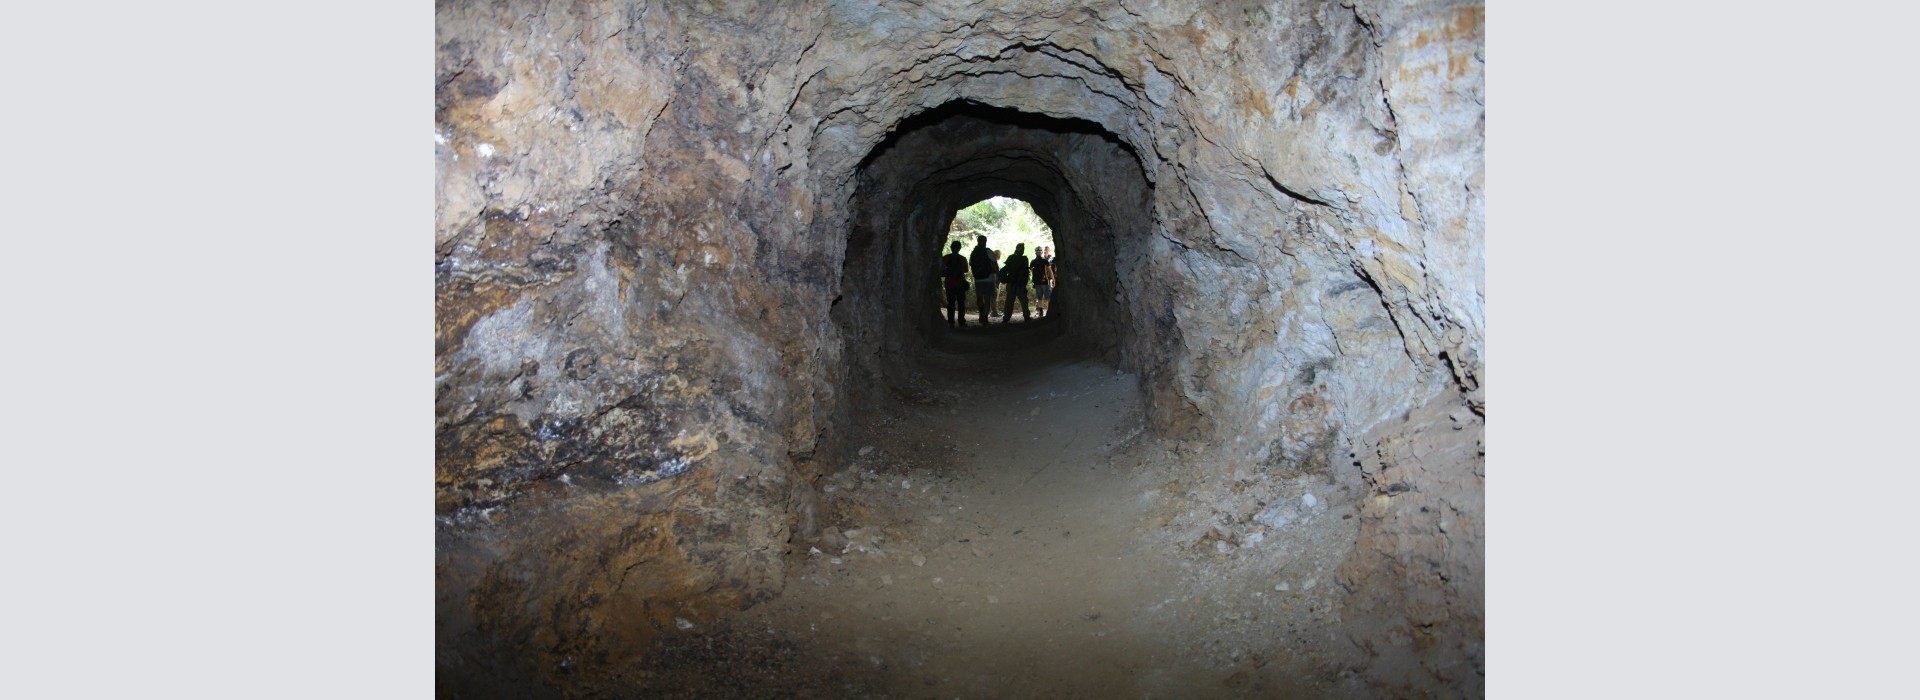 Sortida del GMC a les mines de ferro de Bruguers (mina “Elvira” o mines de Rocabruna), Gavà.